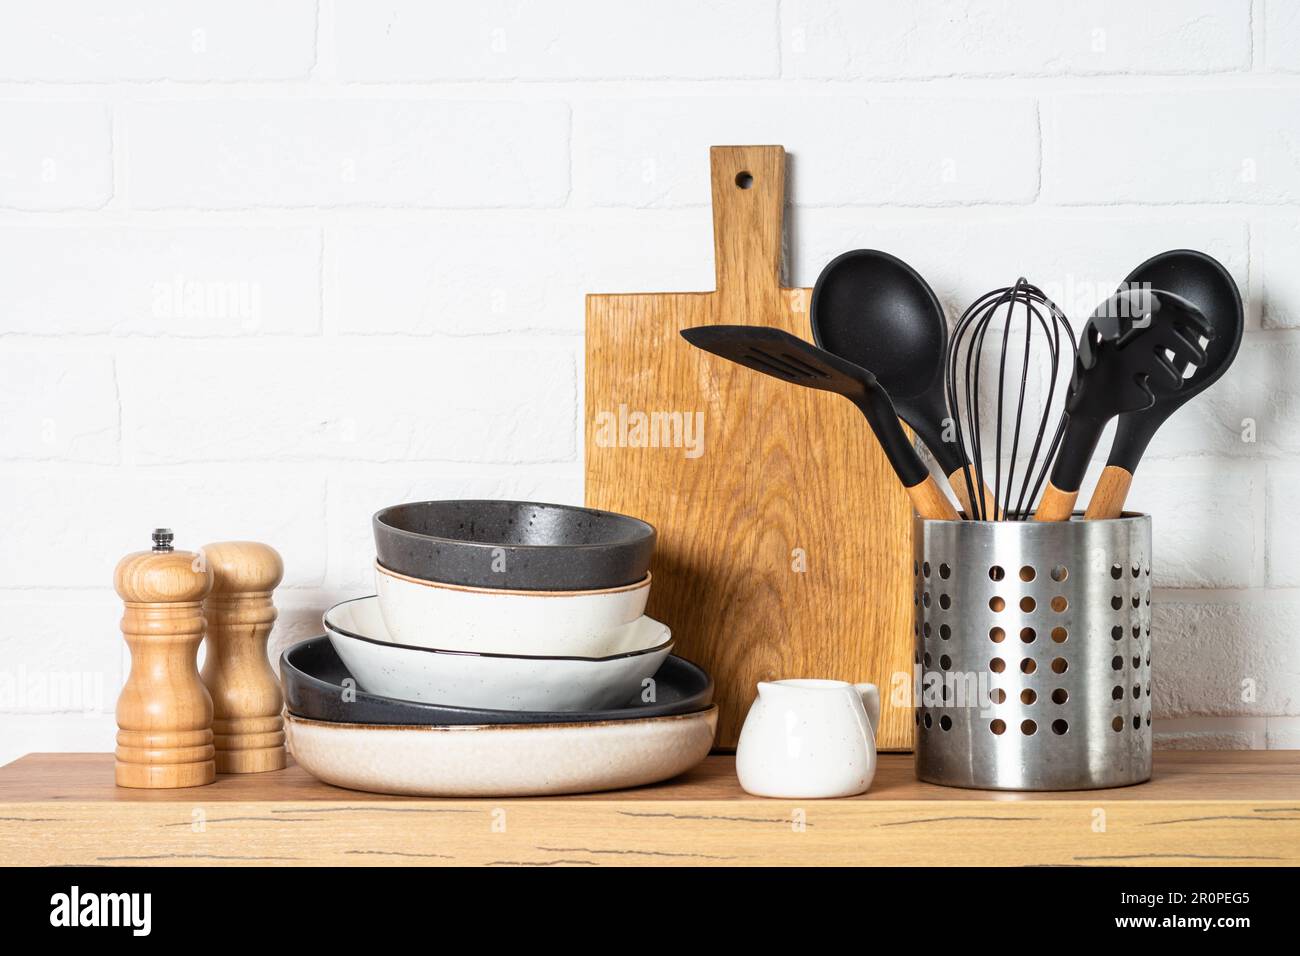 Küchentisch, Küchenutensilien, Teller, Schüsseln, Schüttler und  Holzschneidebrett Stockfotografie - Alamy